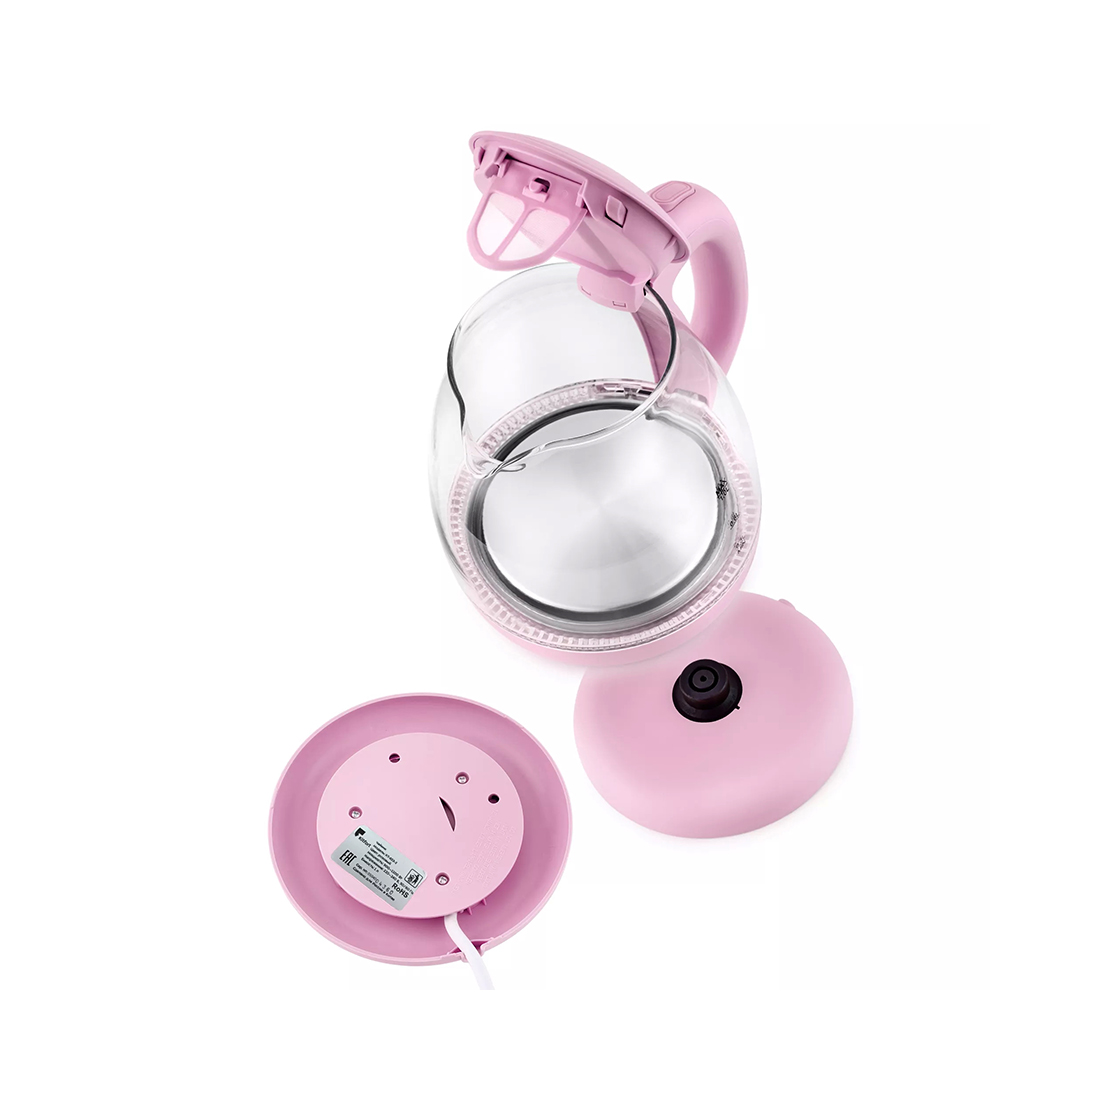 Чайник электрический Kitfort КТ-653-2 розовый